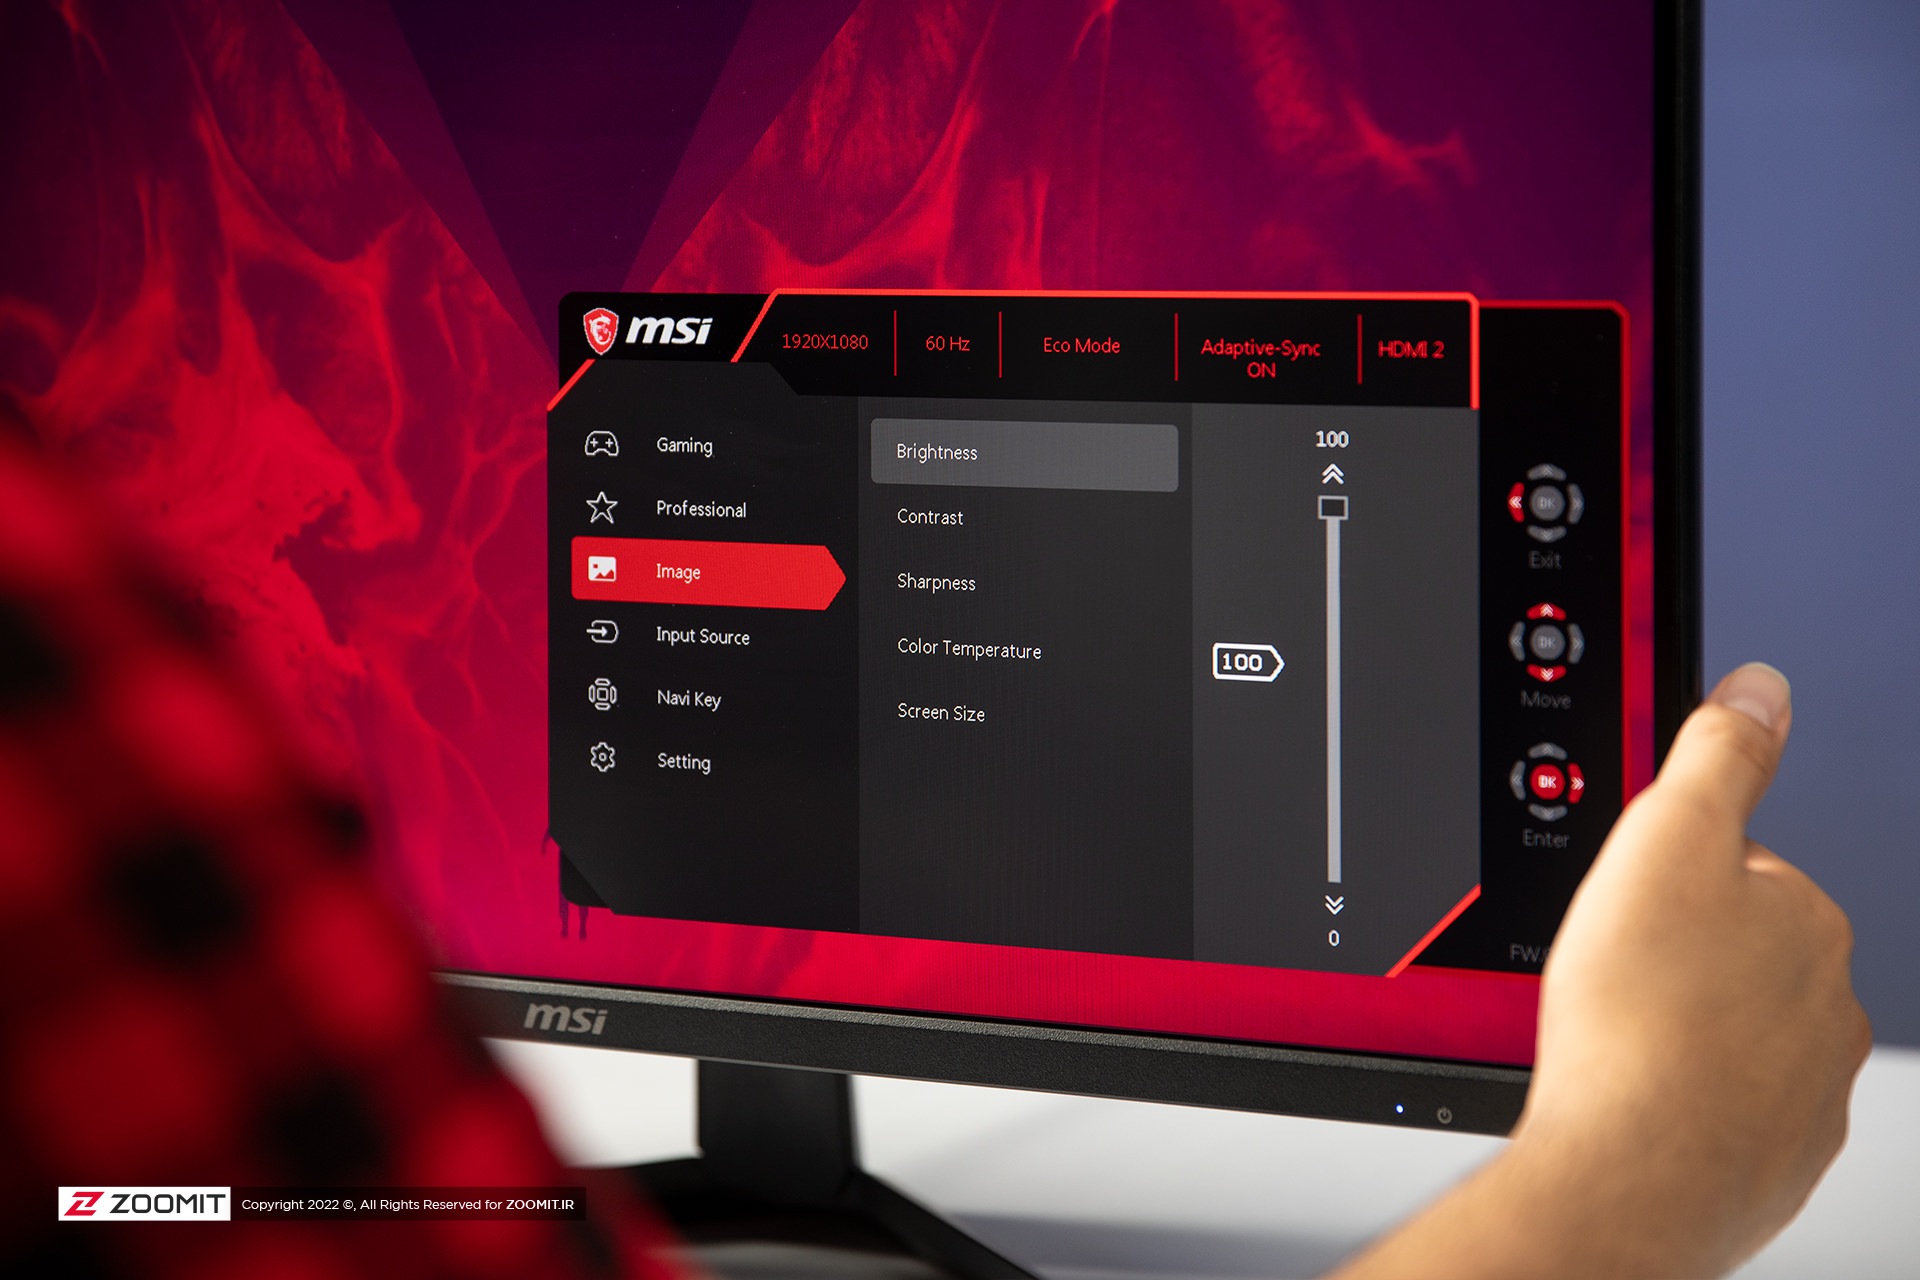 MSI Optix MAG273 gaming monitor settings menu